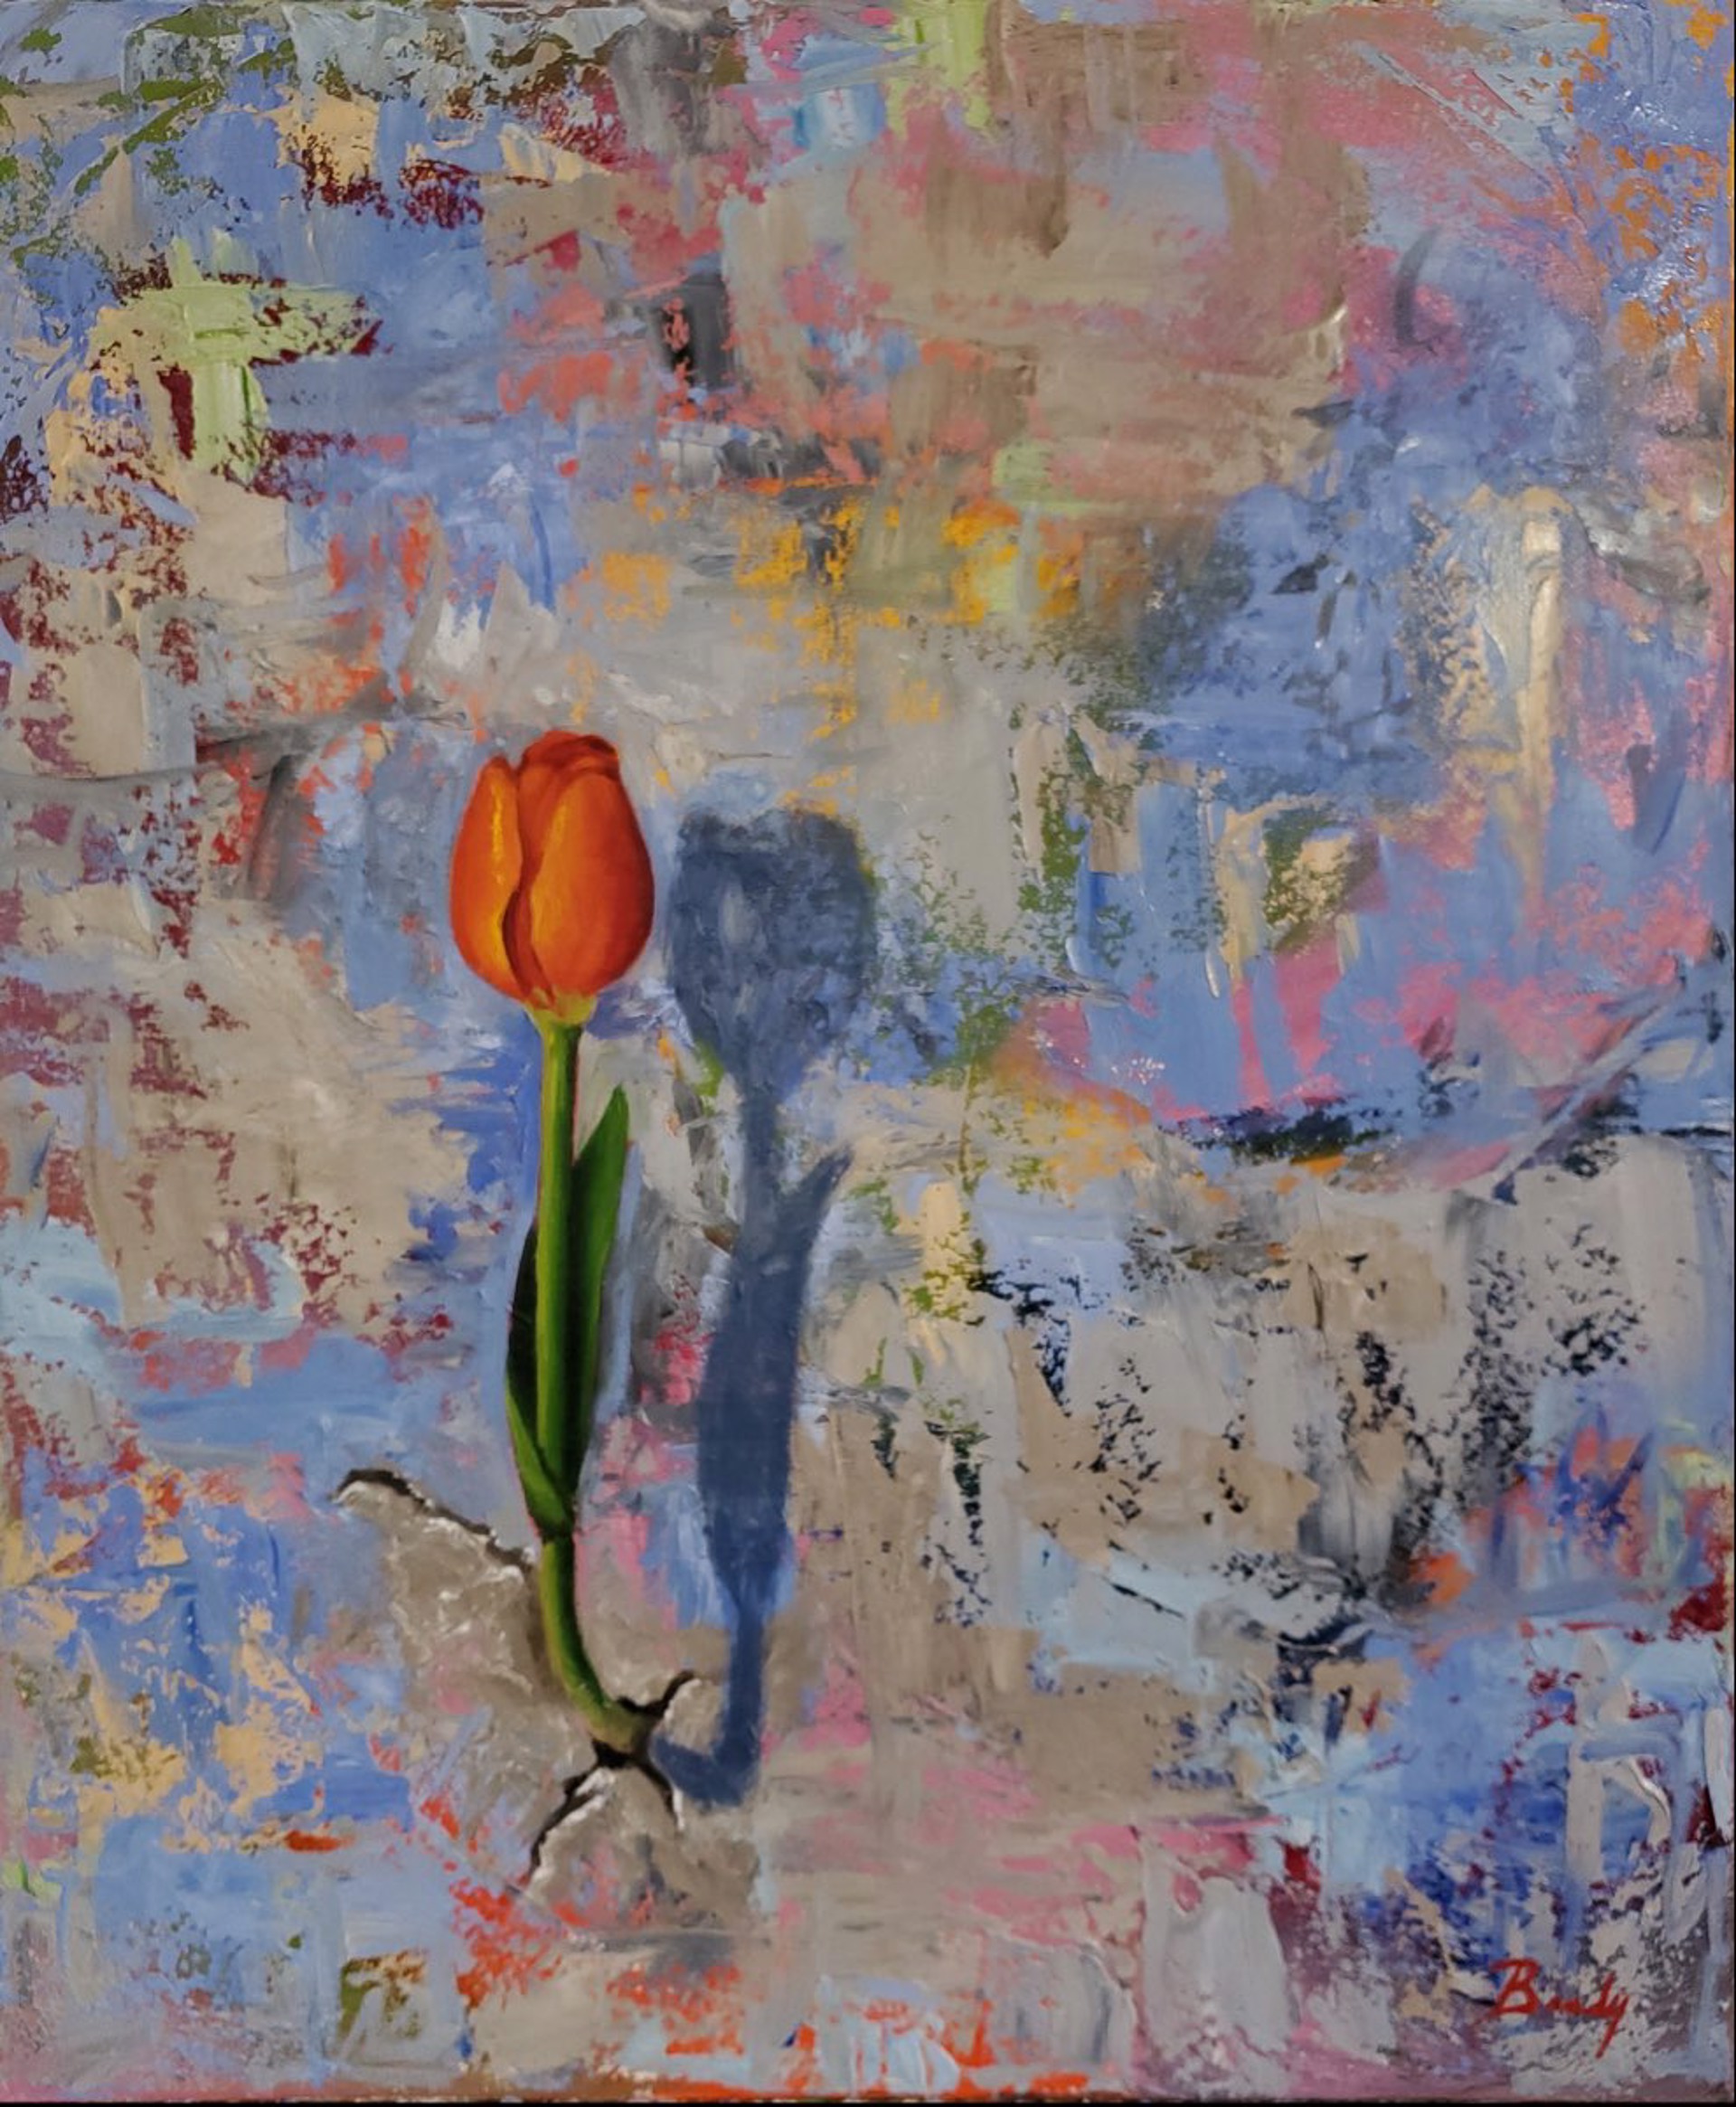 Orange Tulip by Gary Brady